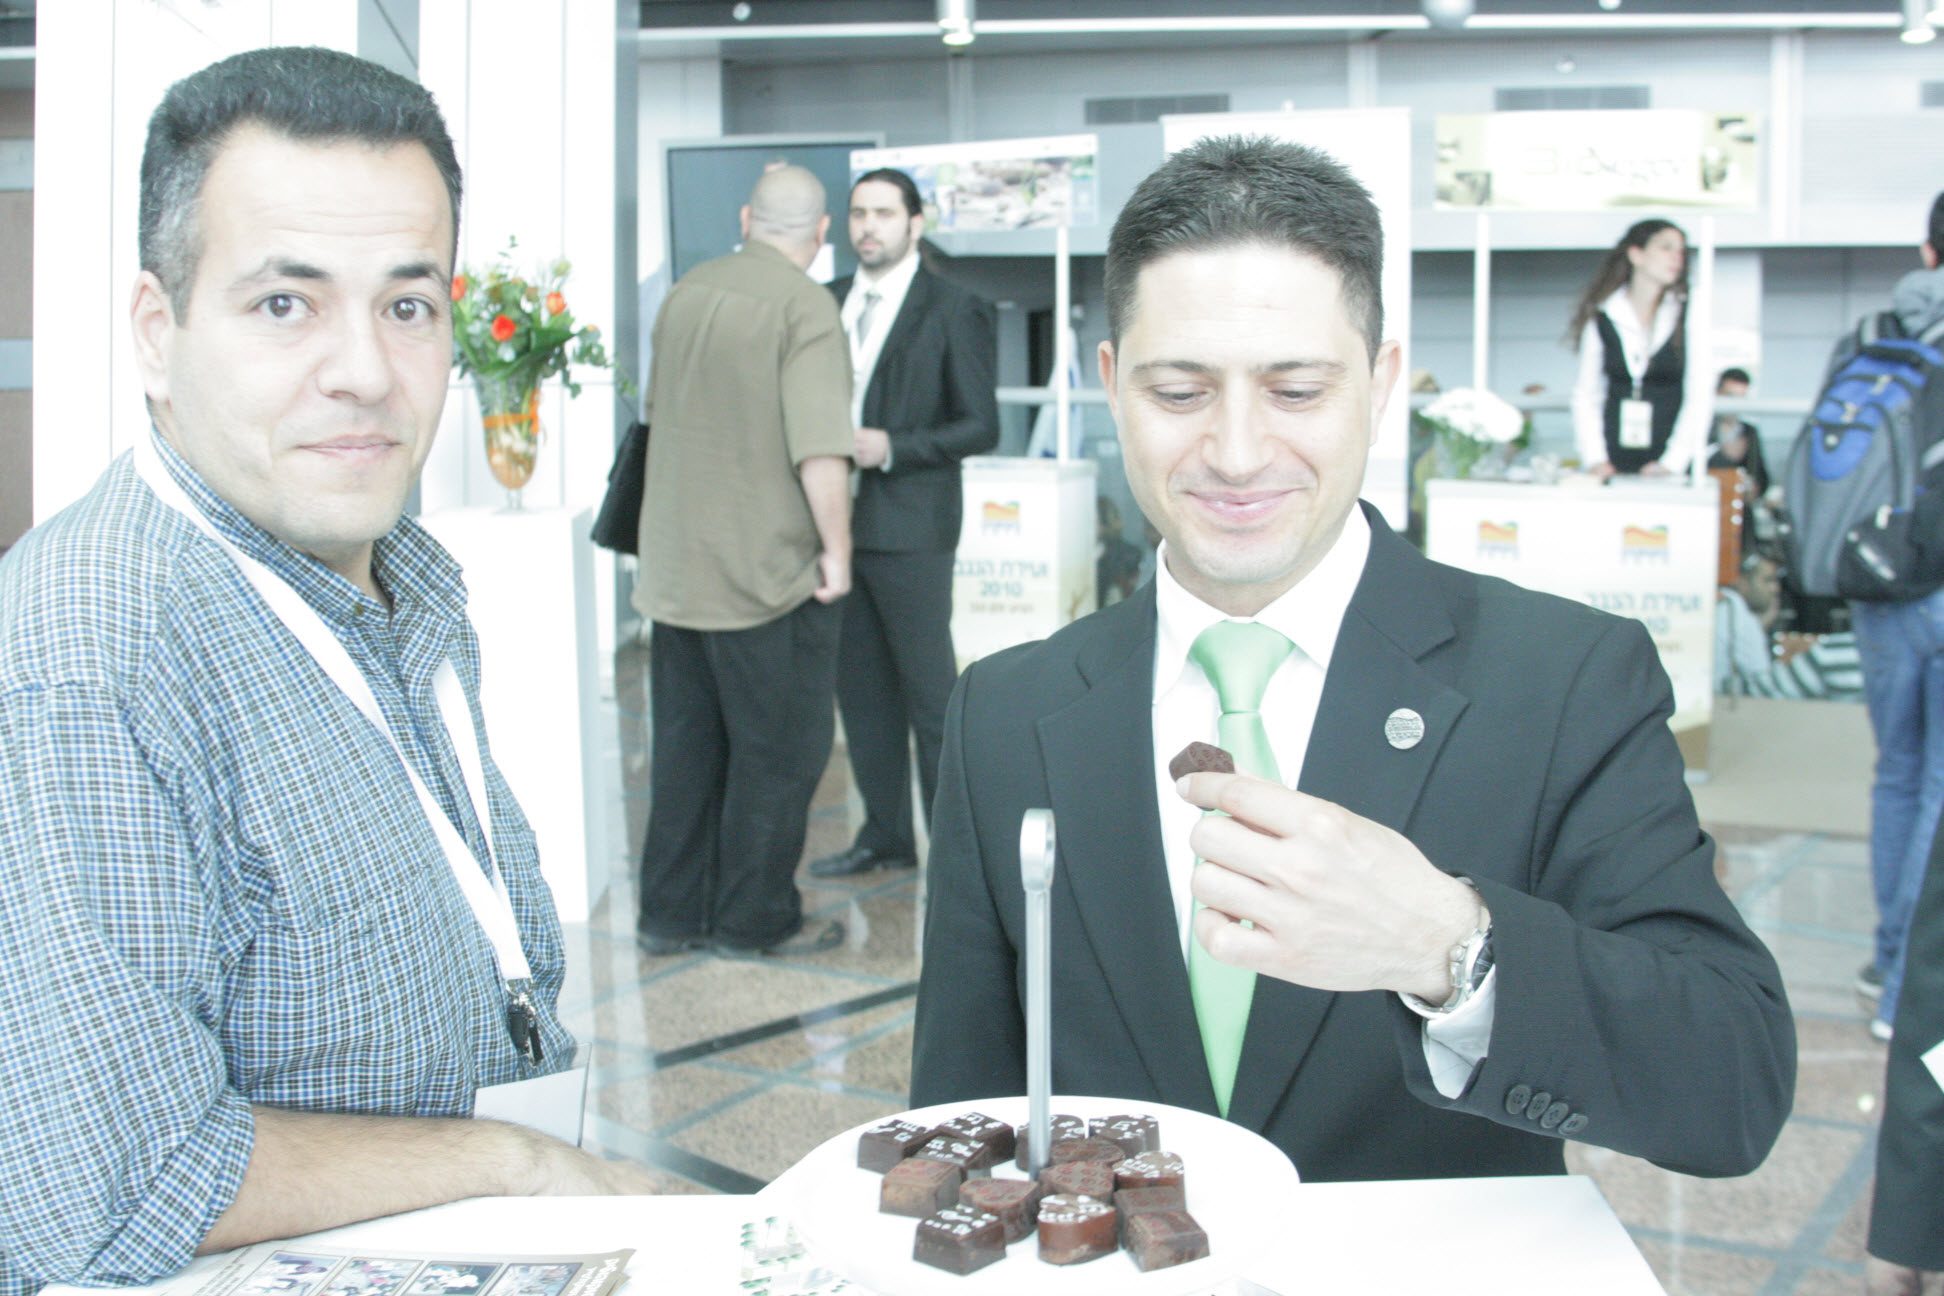 רוביק דנילוביץ, ראש העיר של באר-שבע,  אוכל ונהנה מהשוקולד של שוקוהוליק בוועידת הנגב